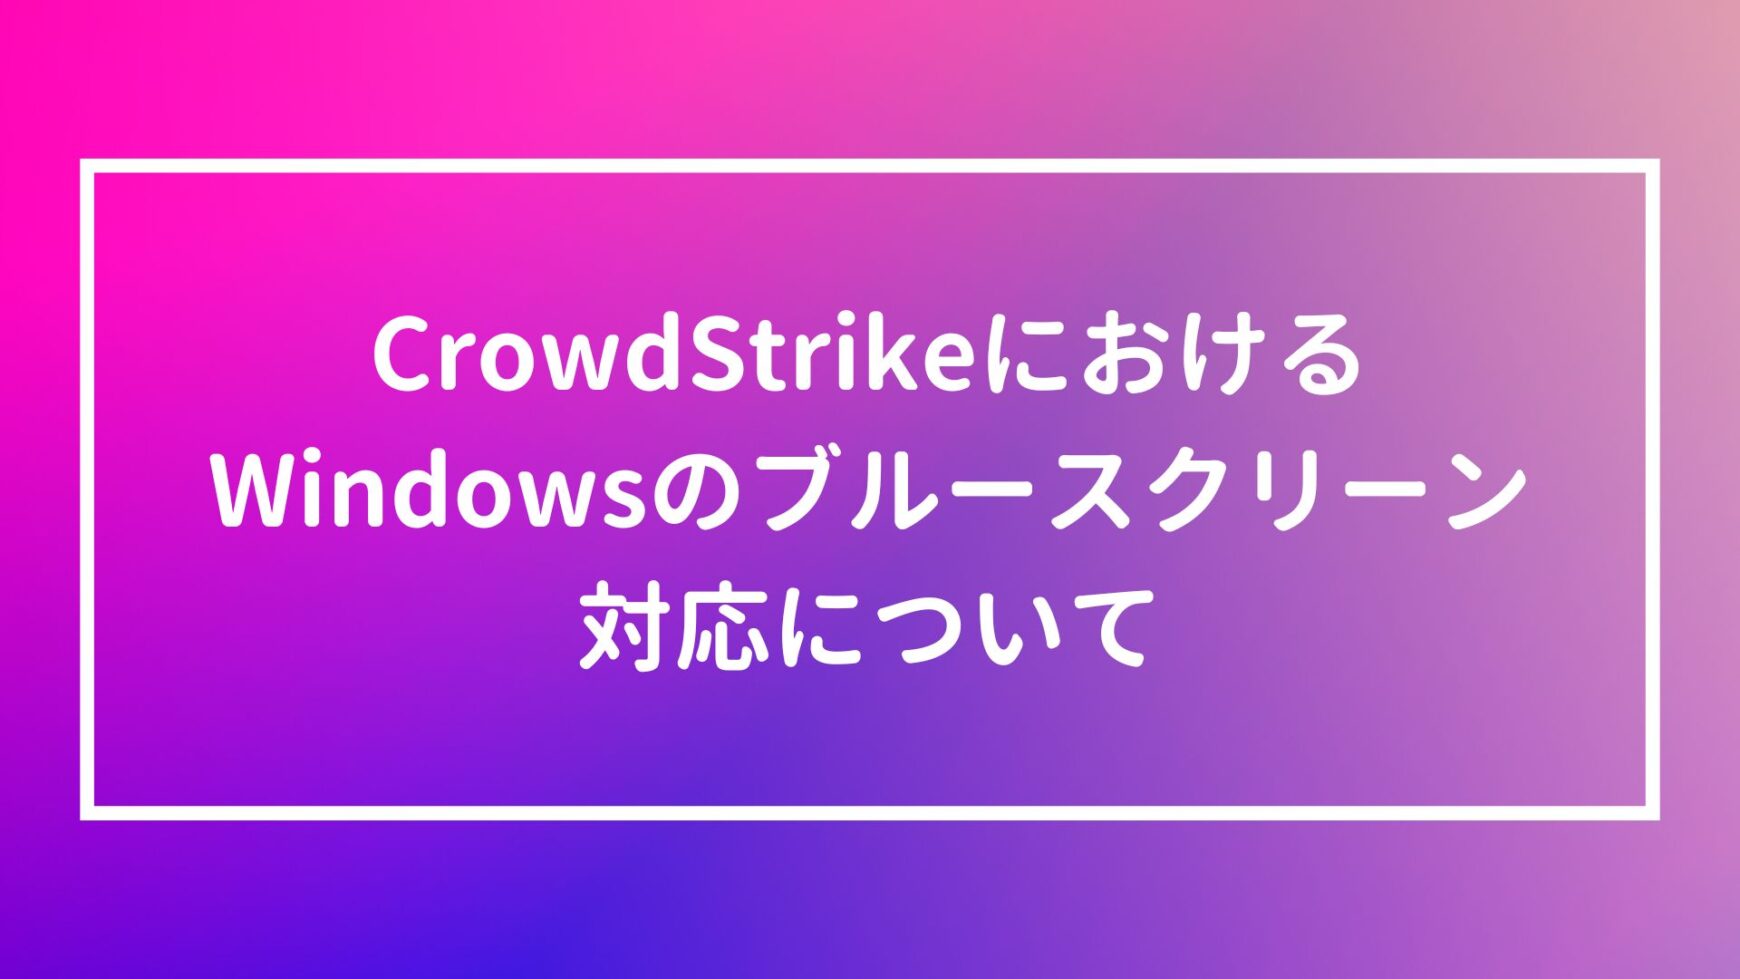 7/19【CrowdStrike】Windowsのブルースクリーン対応について【BSOD】